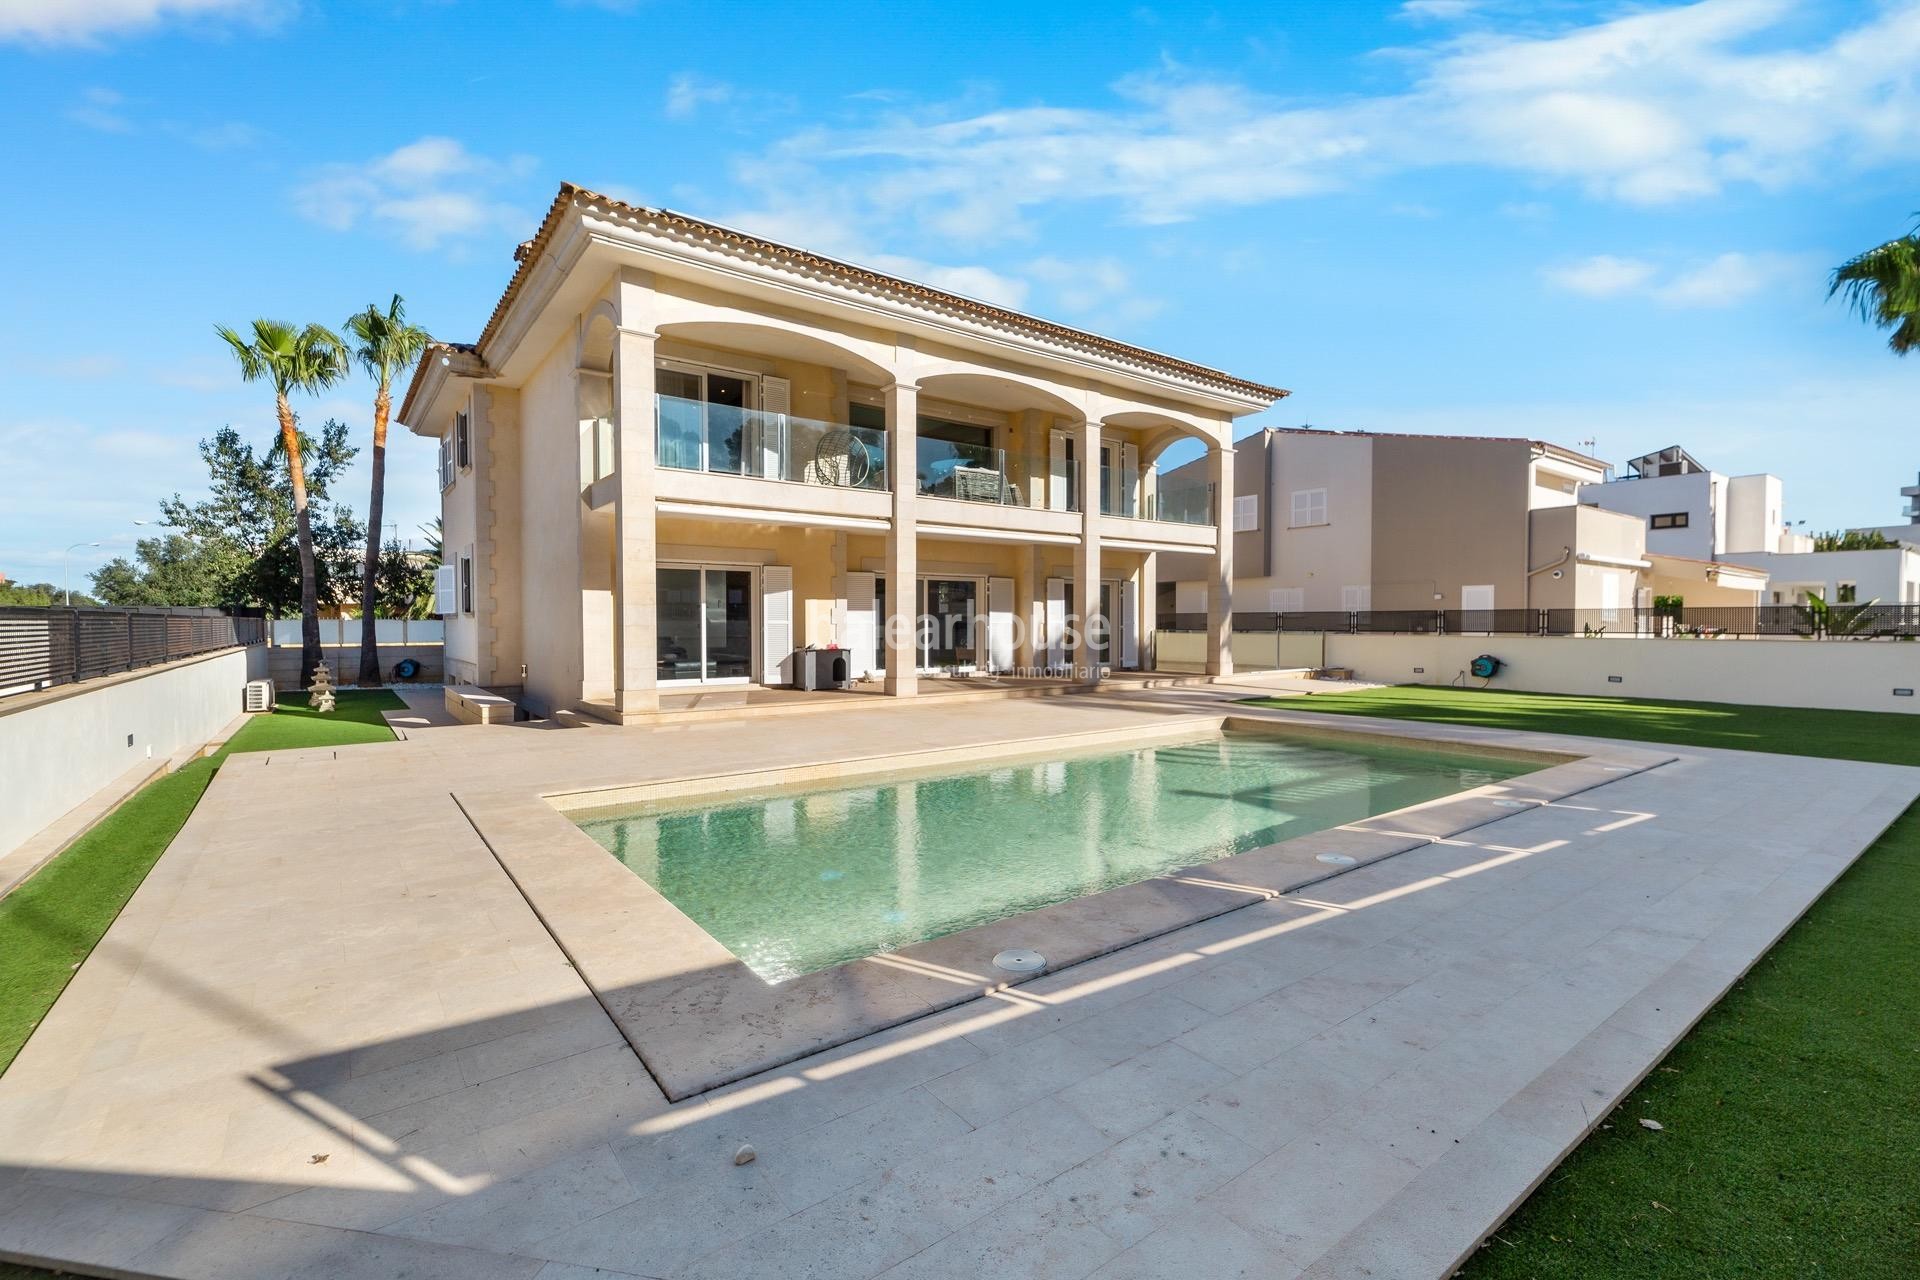 Preciosa villa moderna con terrazas y piscina cerca de la playa en la zona Las Maravillas